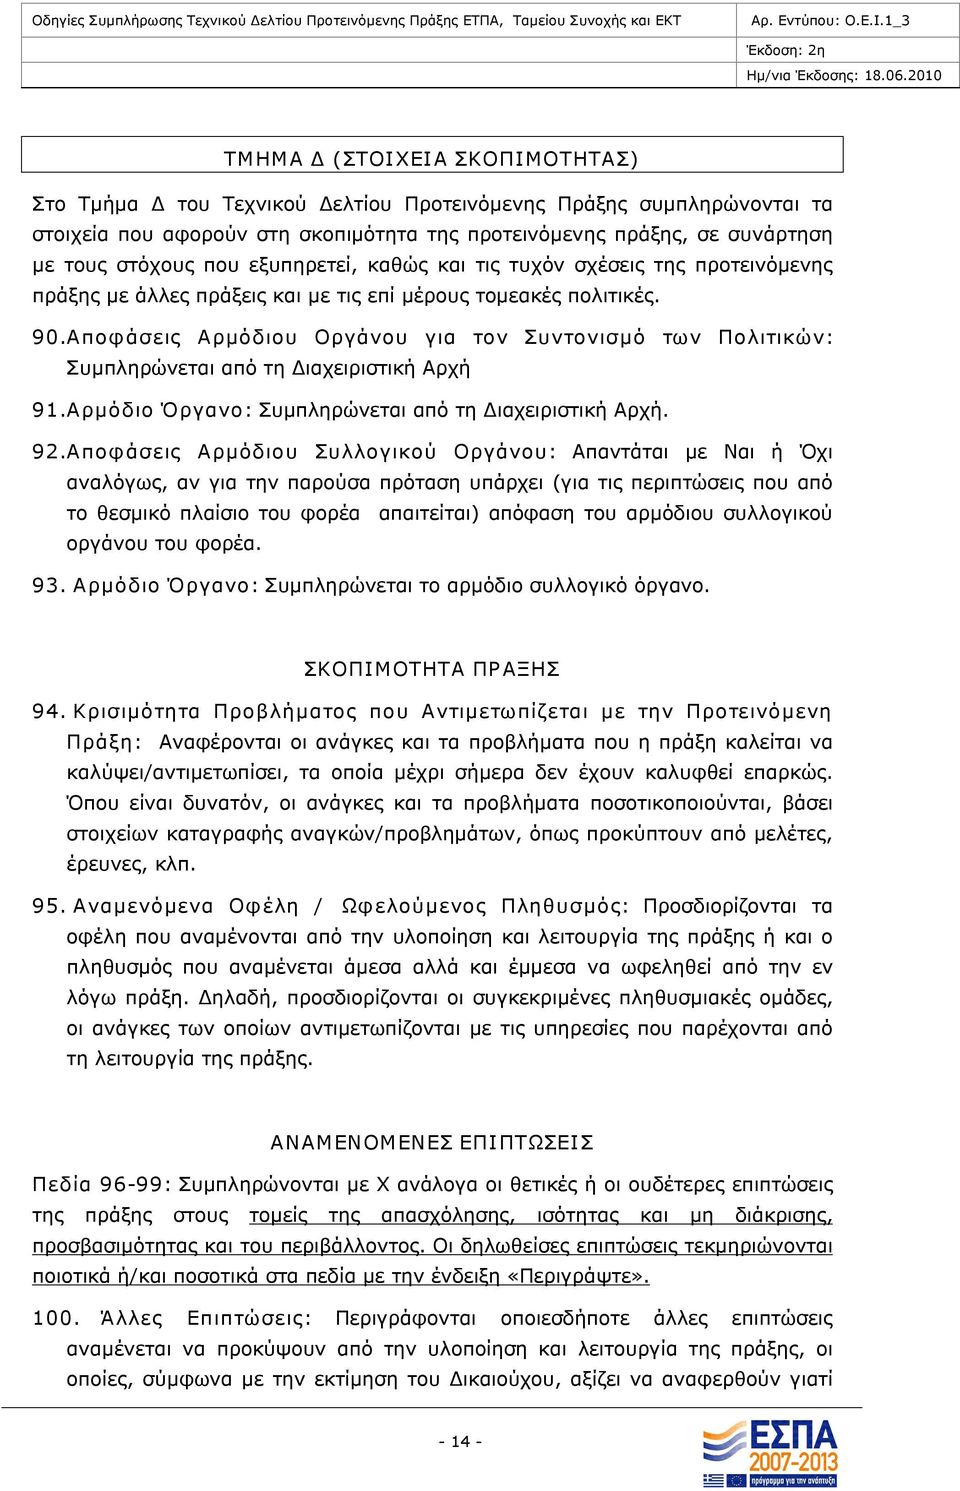 Αποφάσεις Αρμόδιου Οργάνου για τον Συντονισμό των Πολιτικών: Συμπληρώνεται από τη Διαχειριστική Αρχή 91.Αρμόδιο Όργανο: Συμπληρώνεται από τη Διαχειριστική Αρχή. 92.